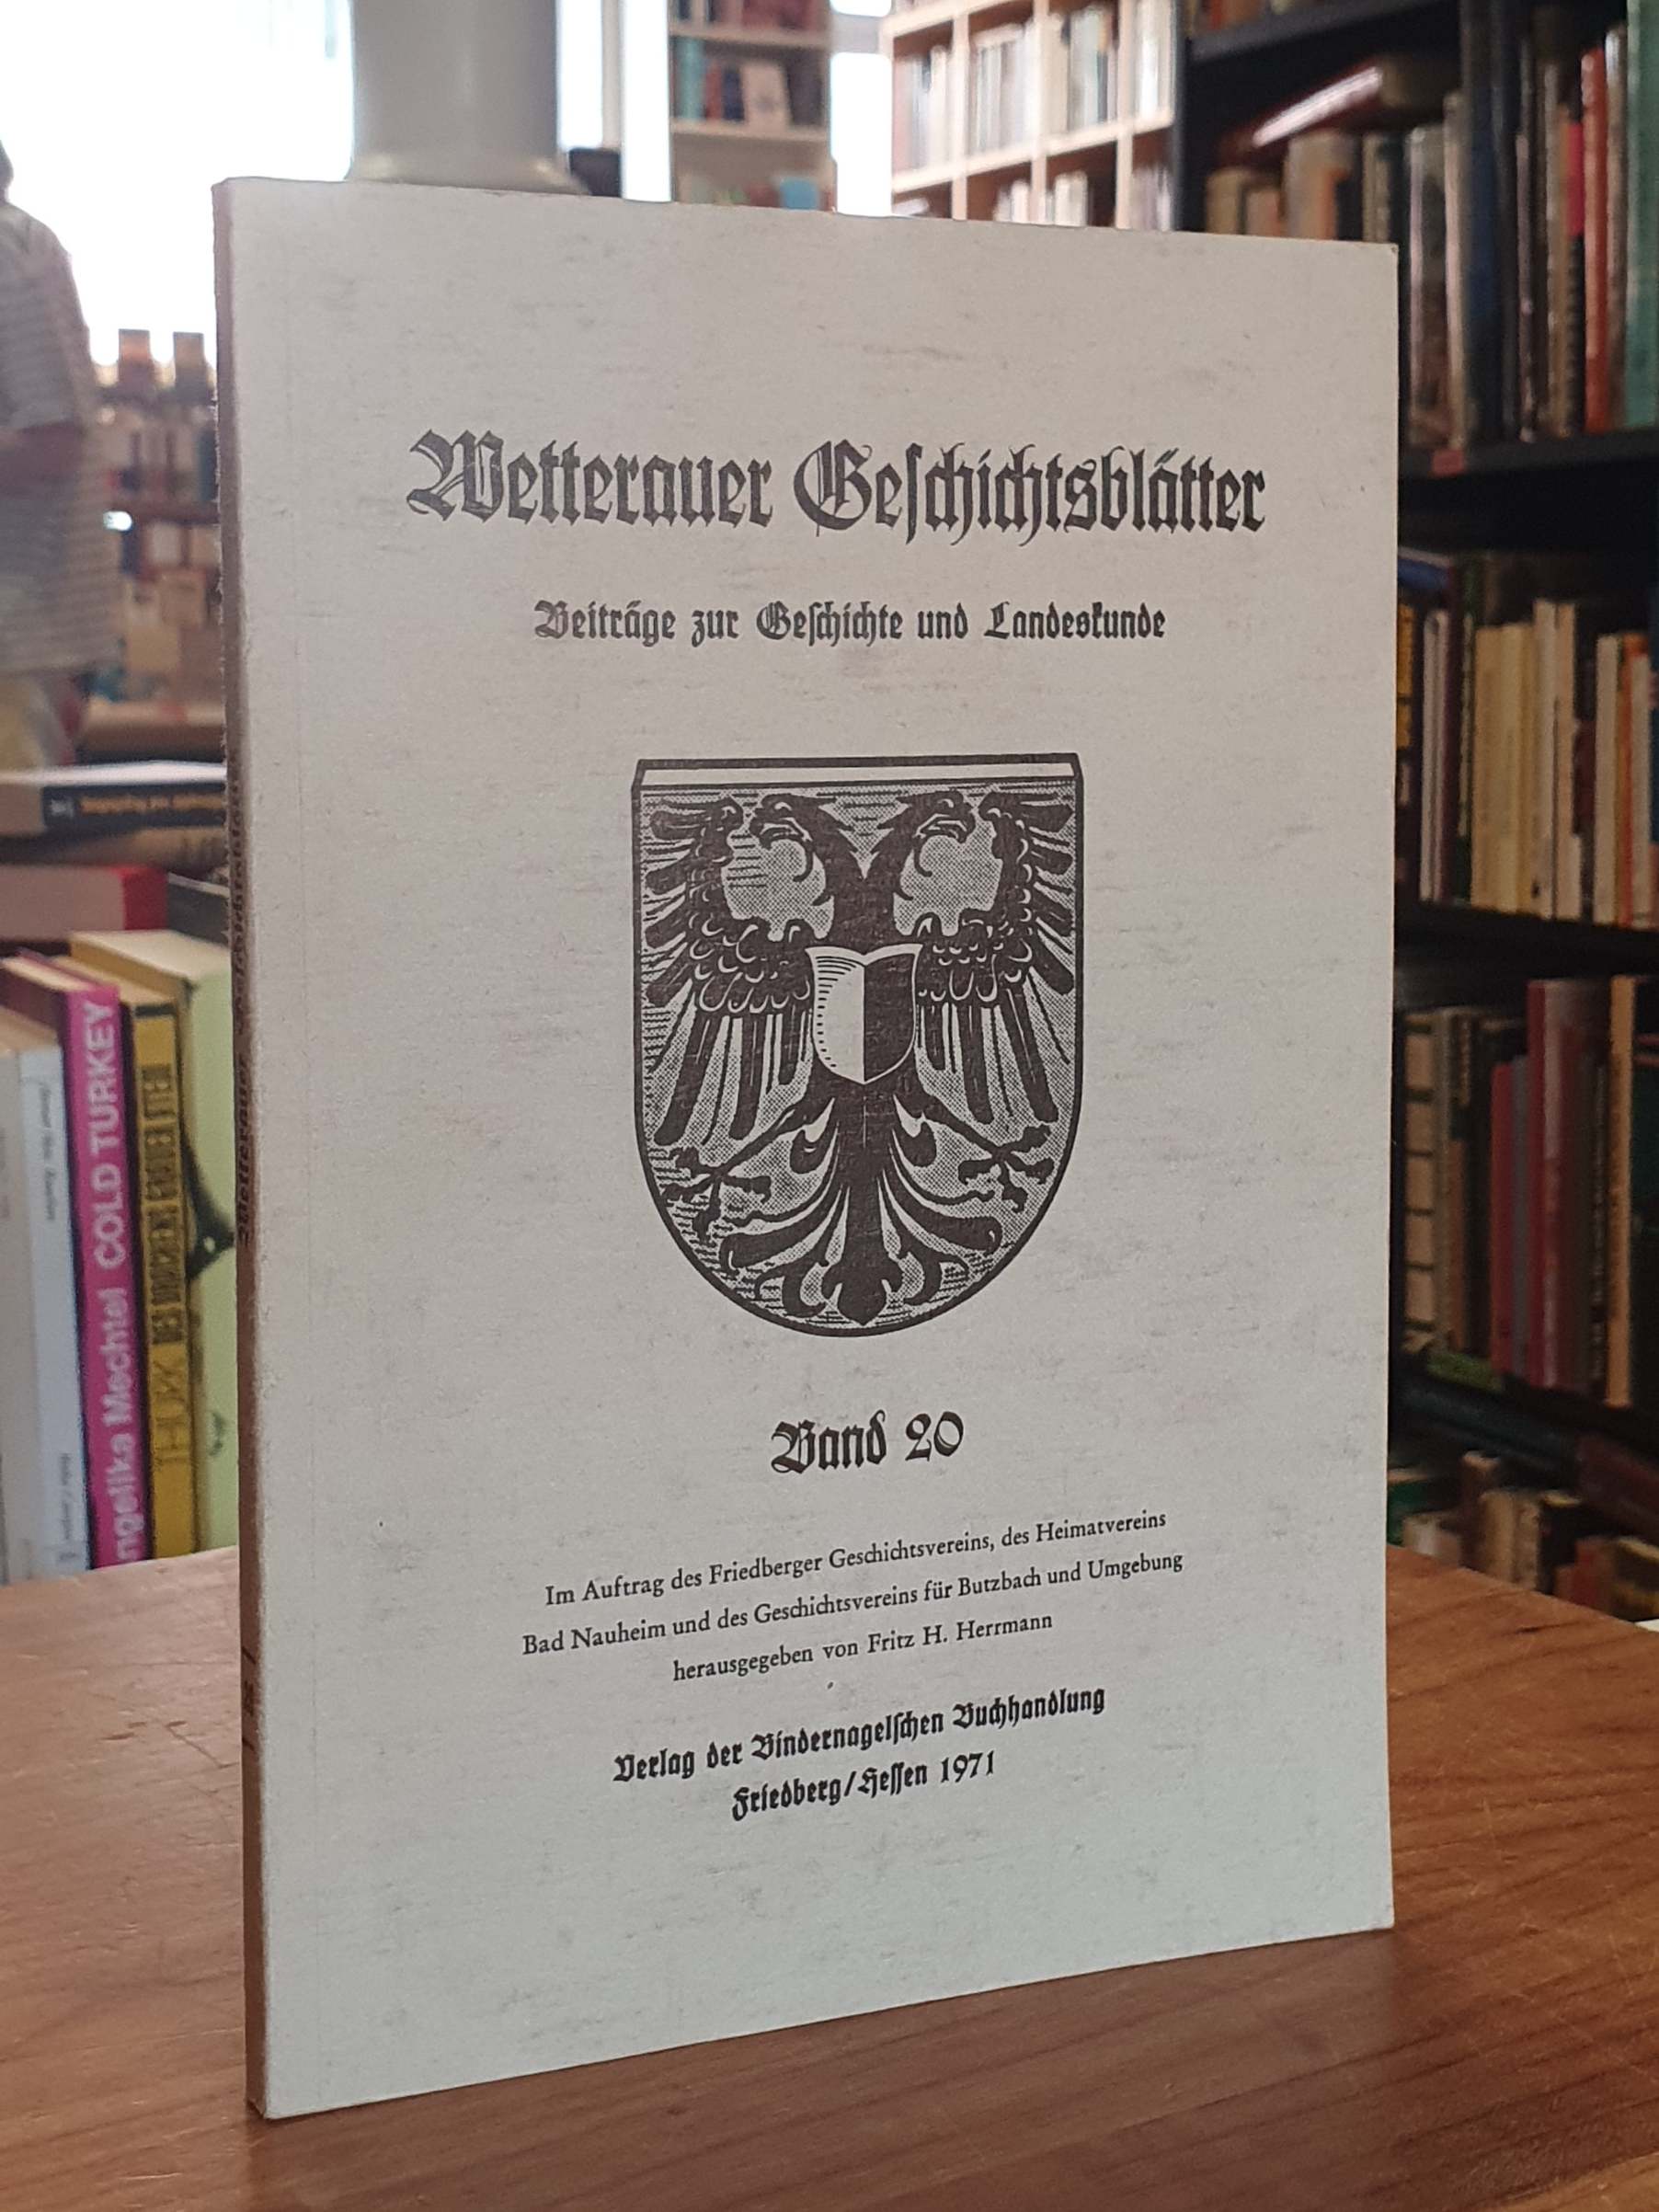 Wetterauer Geschichtsblätter - Beiträge zur Geschichte und Landeskunde - Band 20, - Wetterau / Fritz H. Herrmann (Hrsg.),